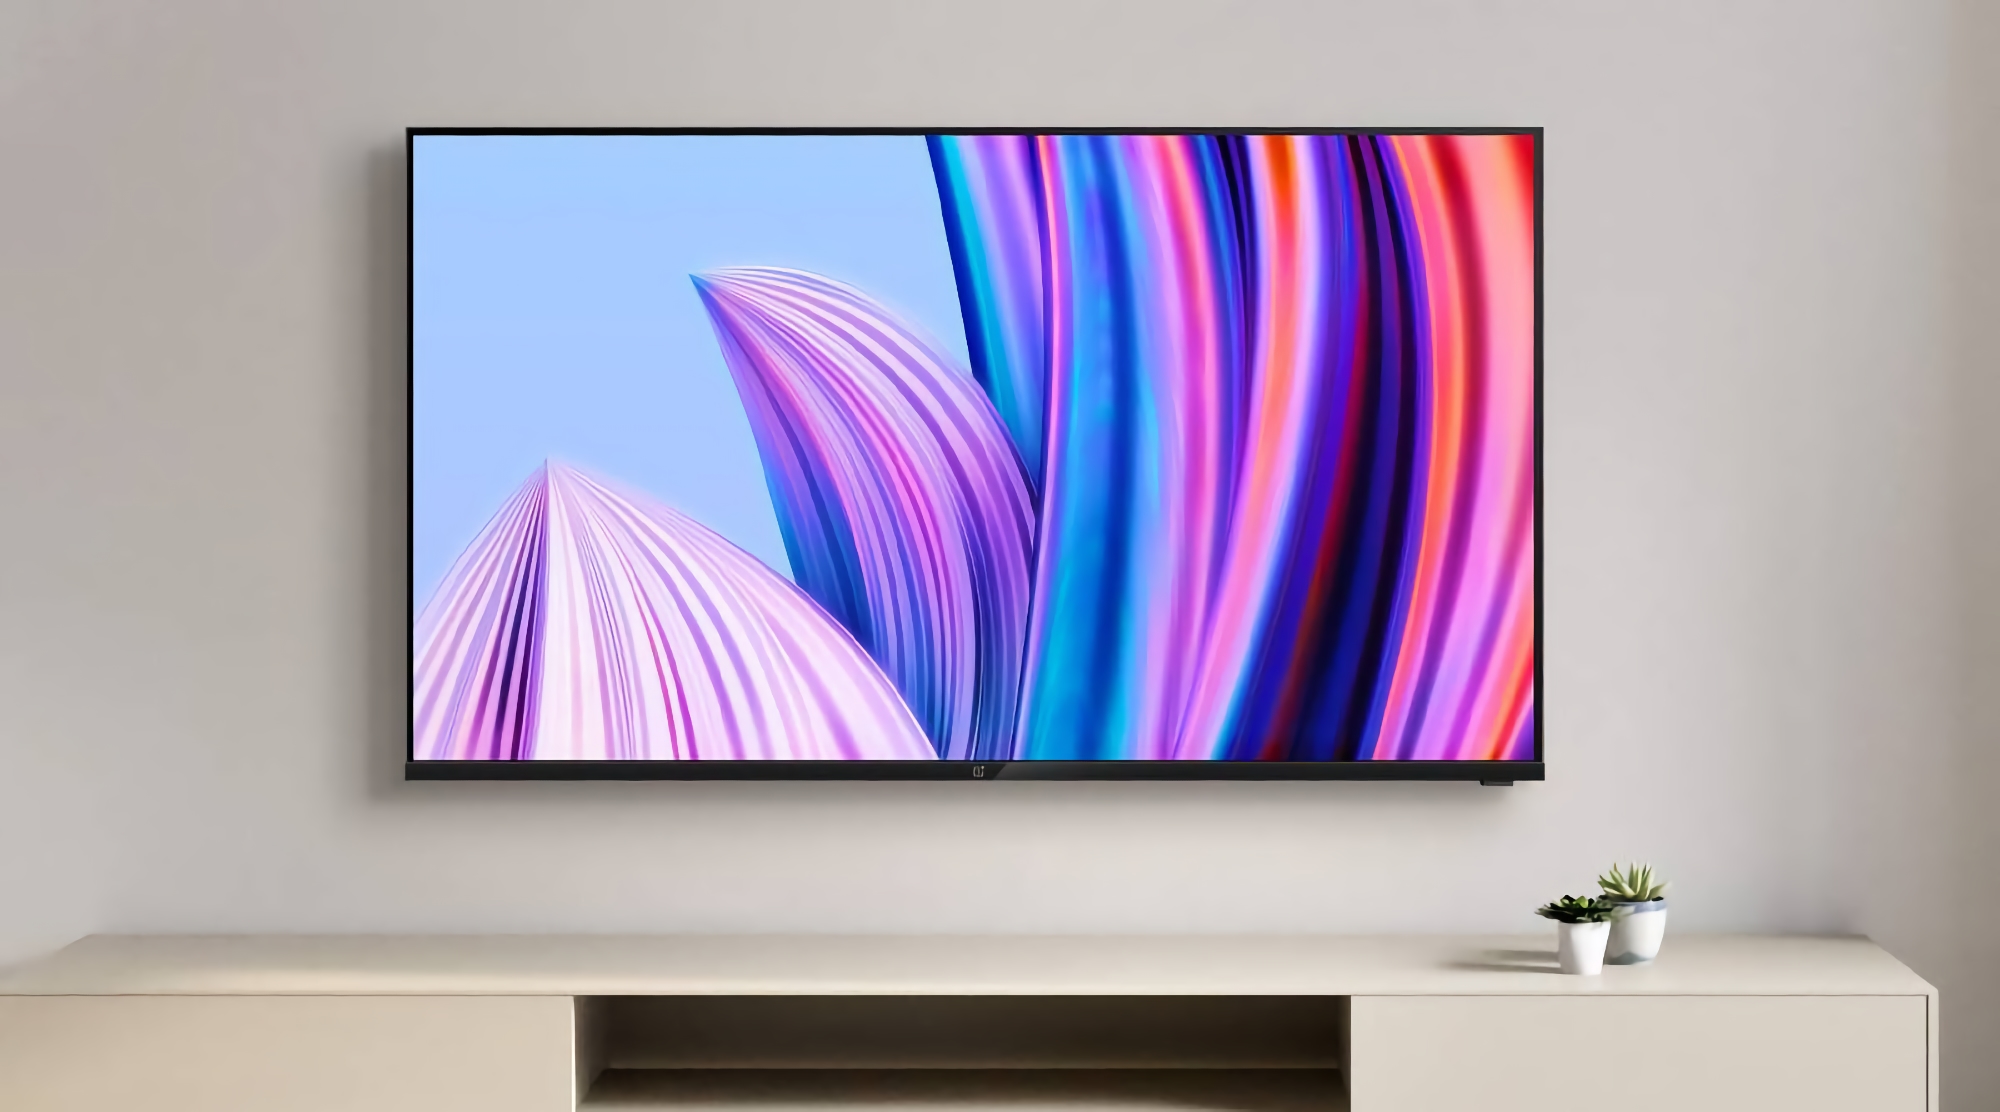 OnePlus se está preparando para lanzar televisores económicos OnePlus Y1S TV con Android TV 11 y altavoces de 20W